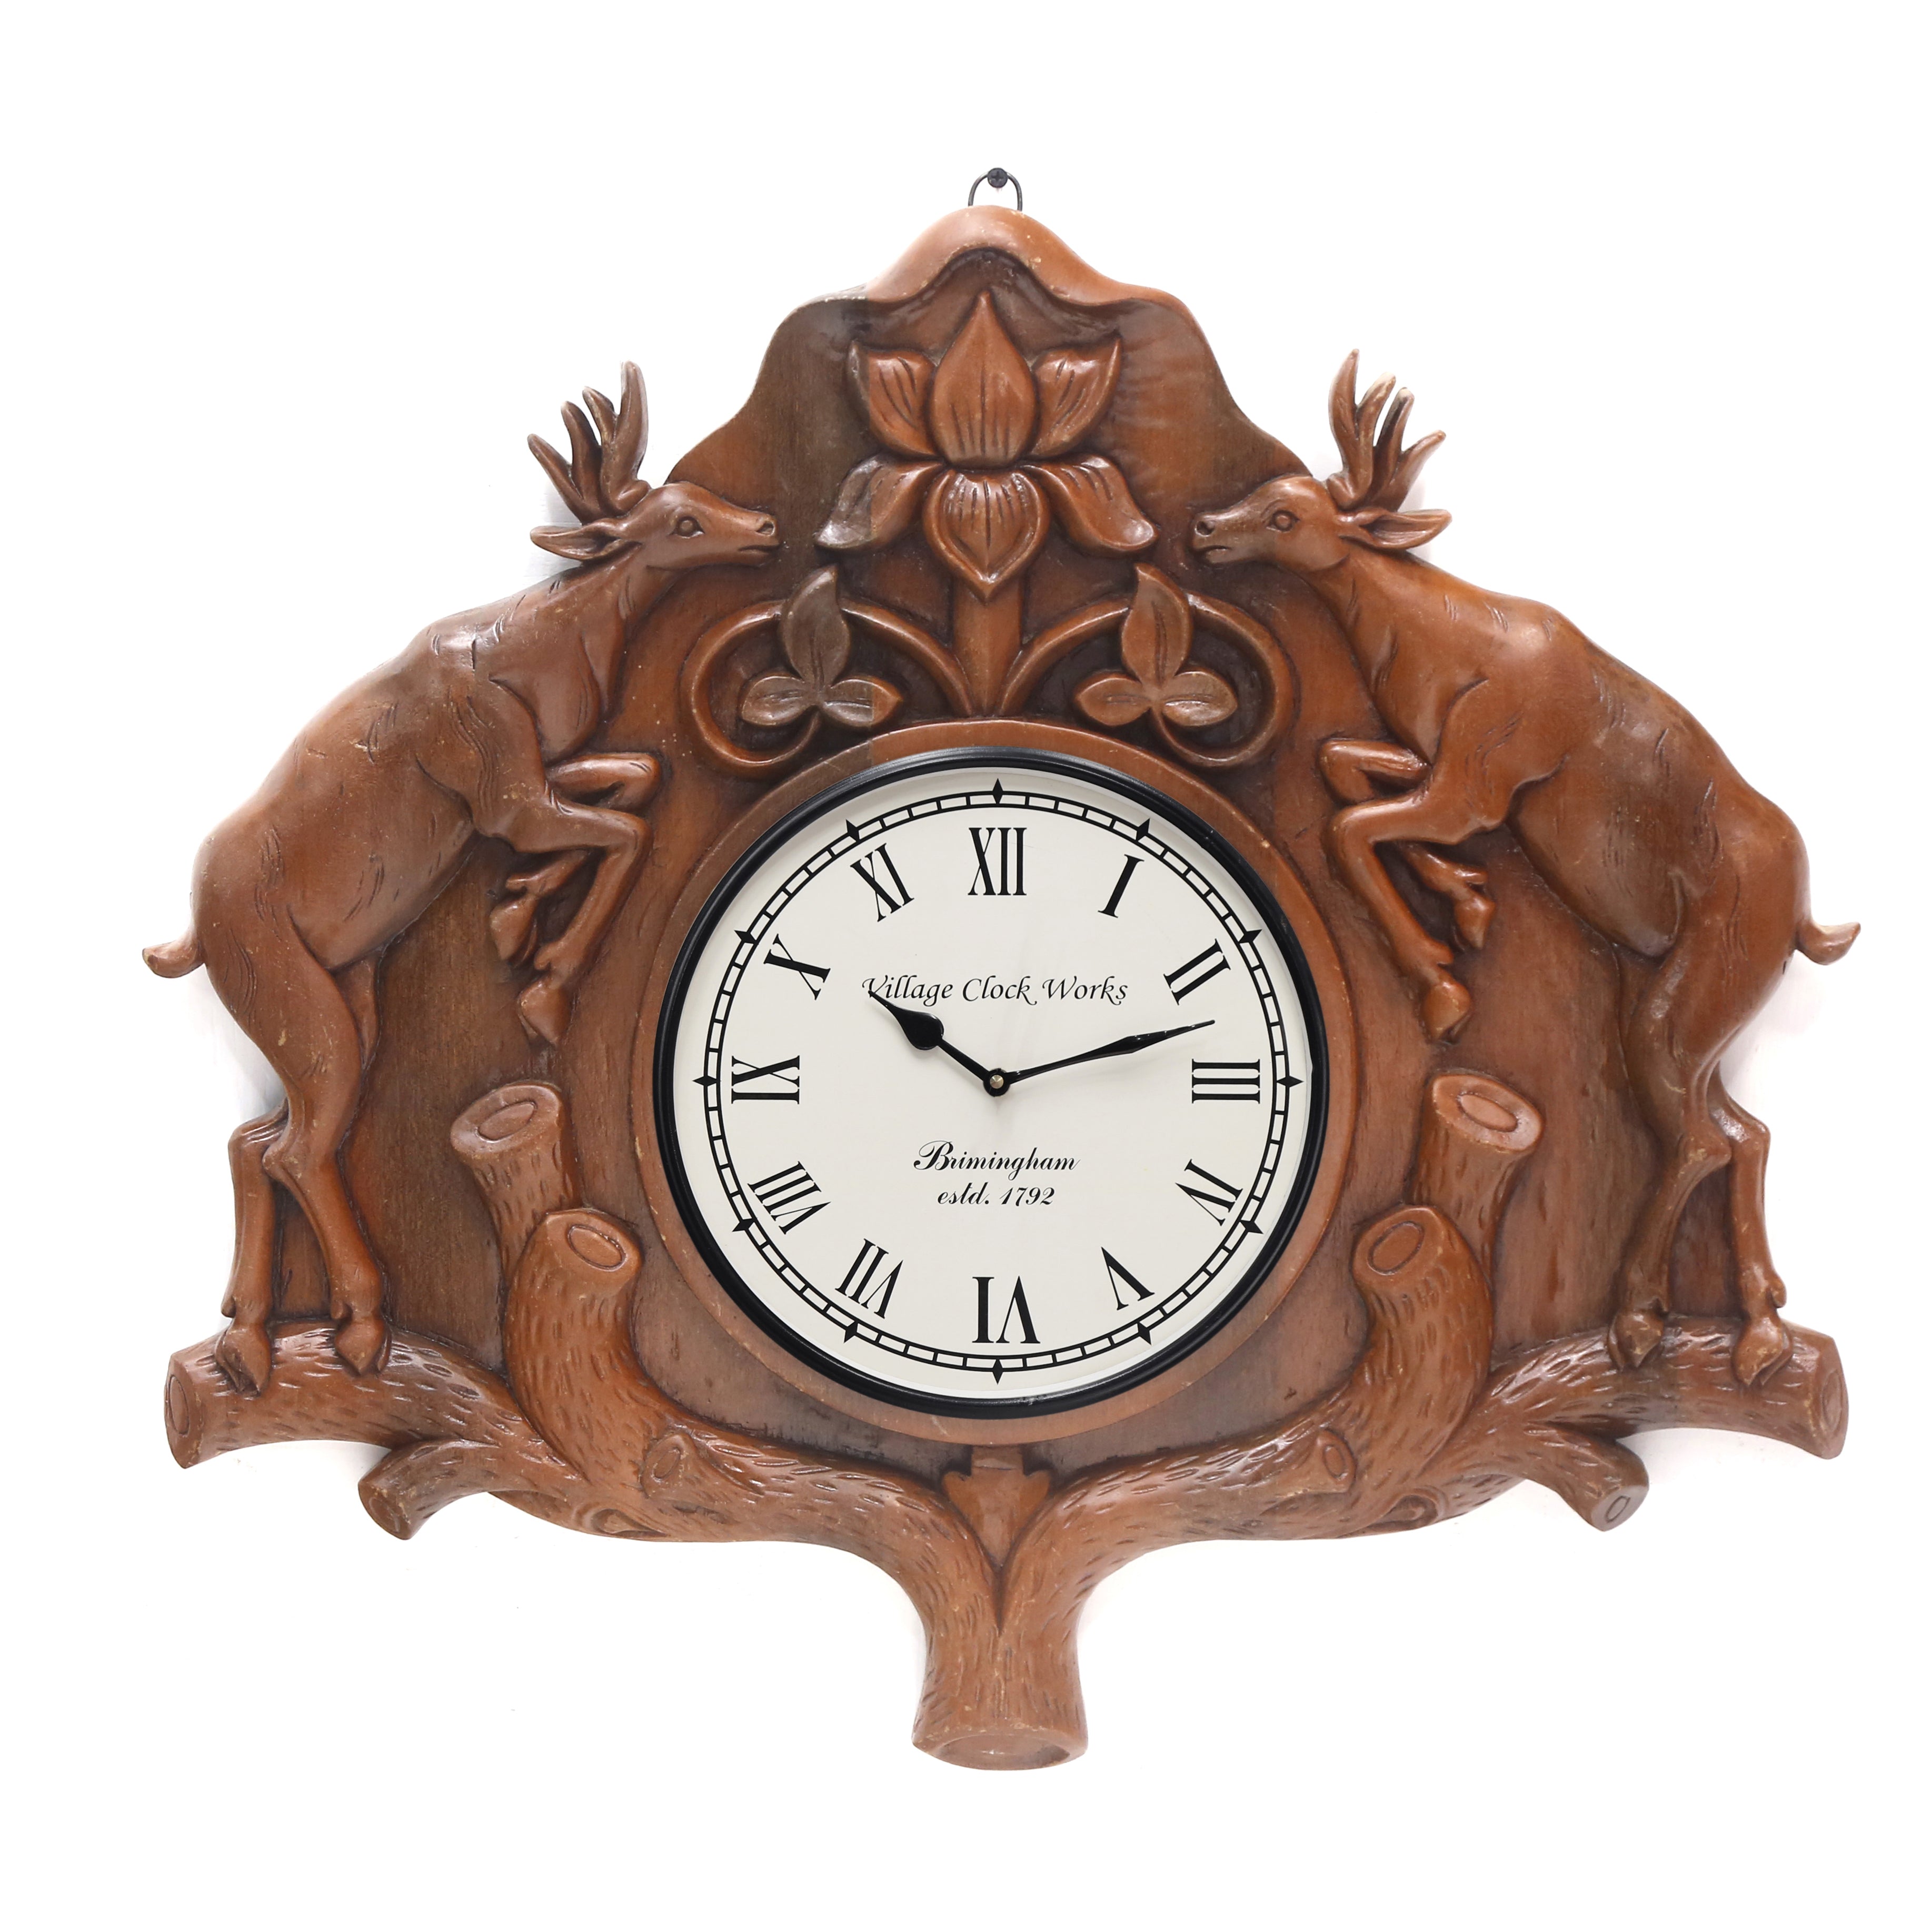 Handcarved Deer Clock Clock